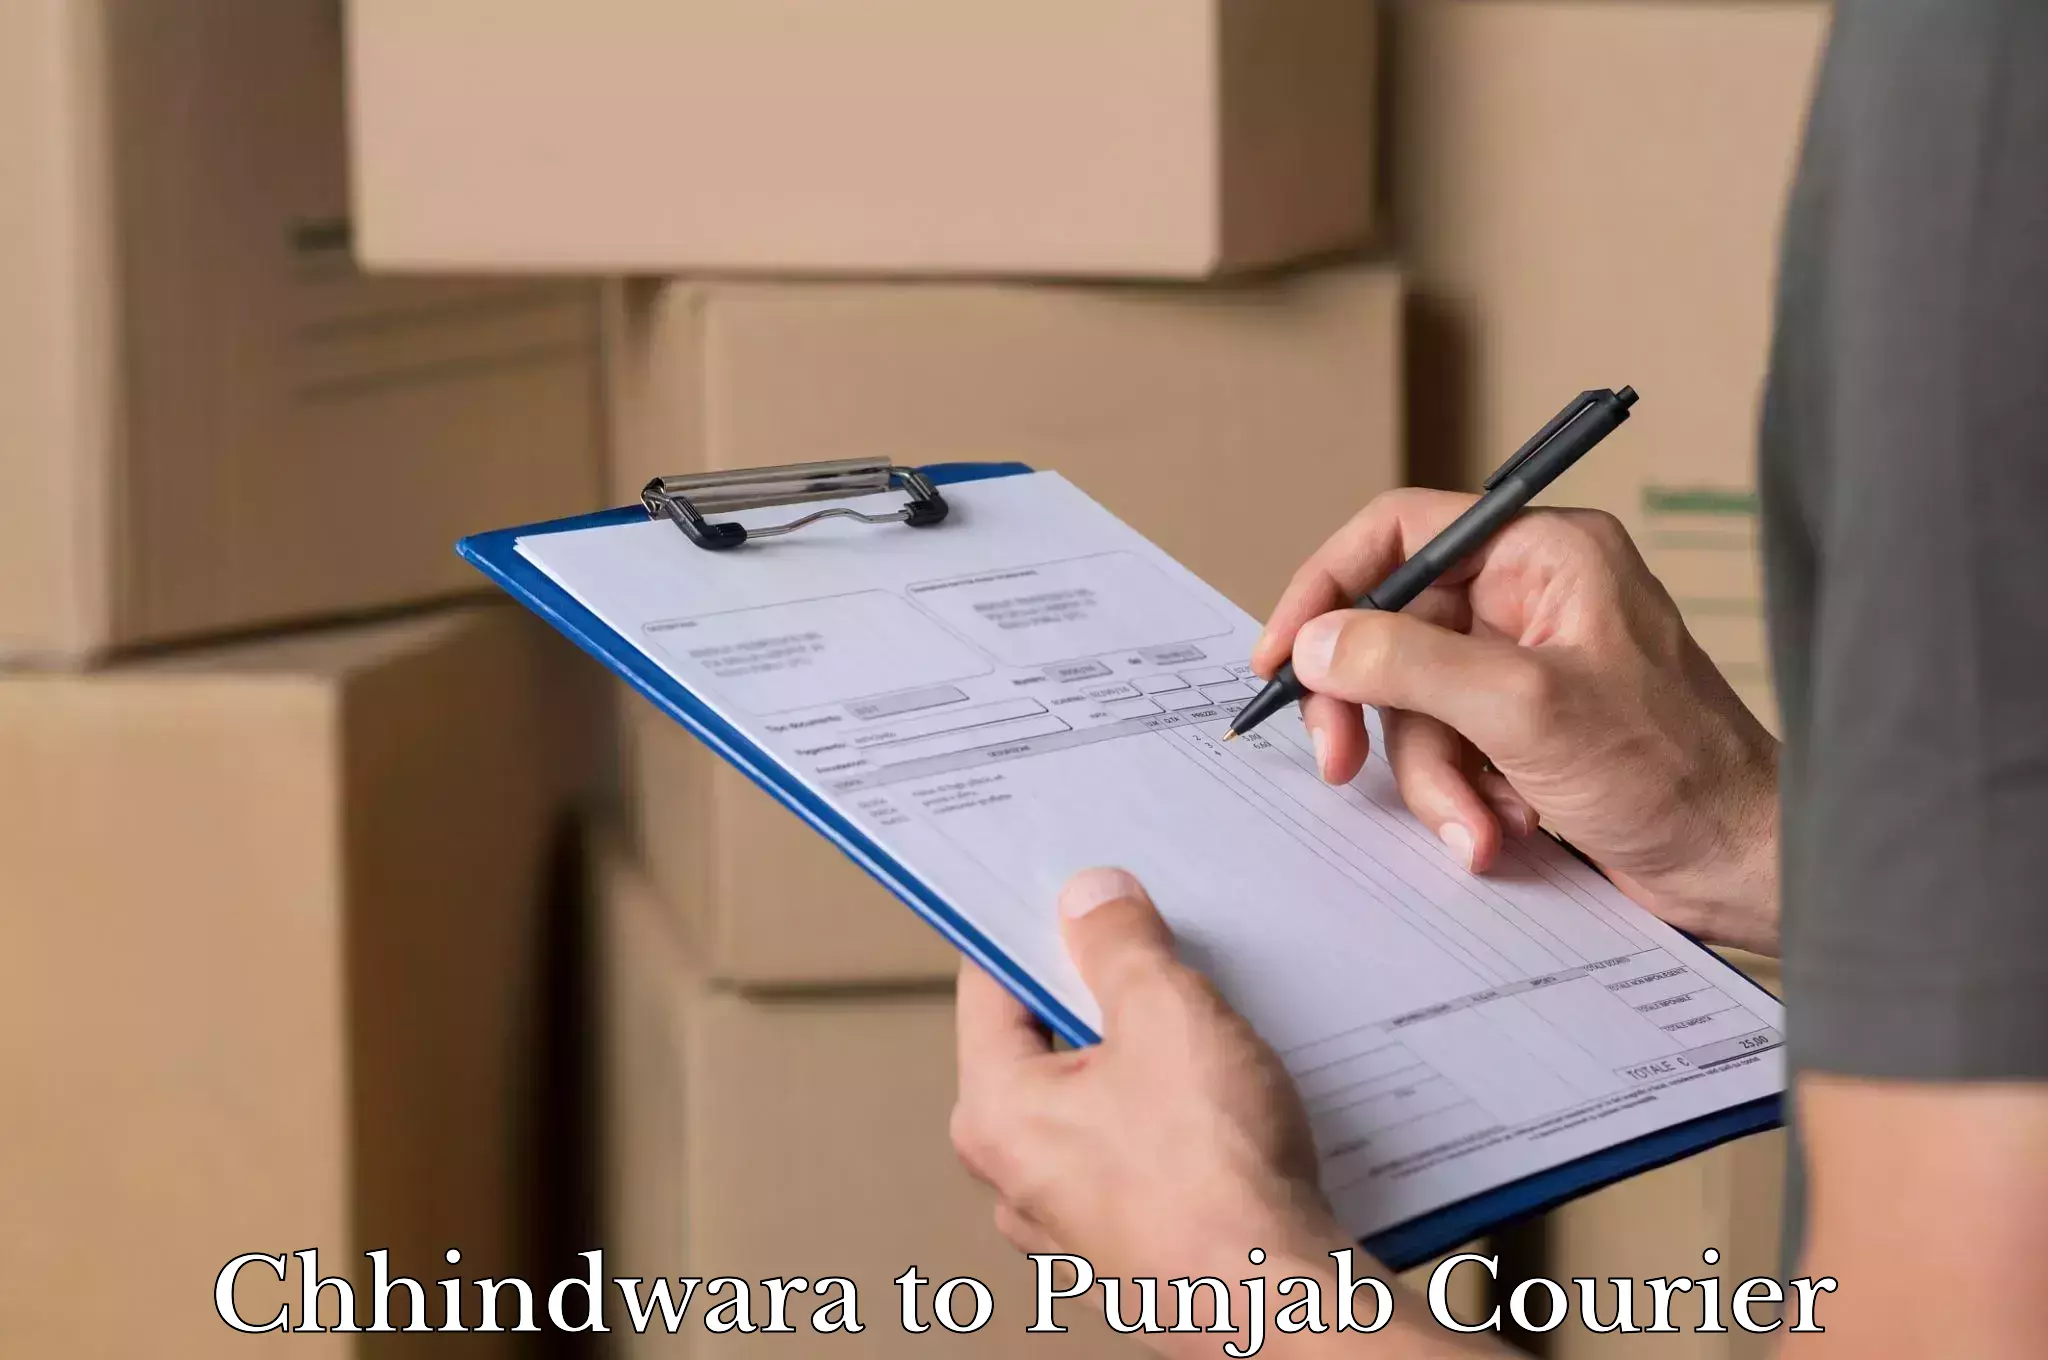 Personal effects shipping Chhindwara to Amritsar